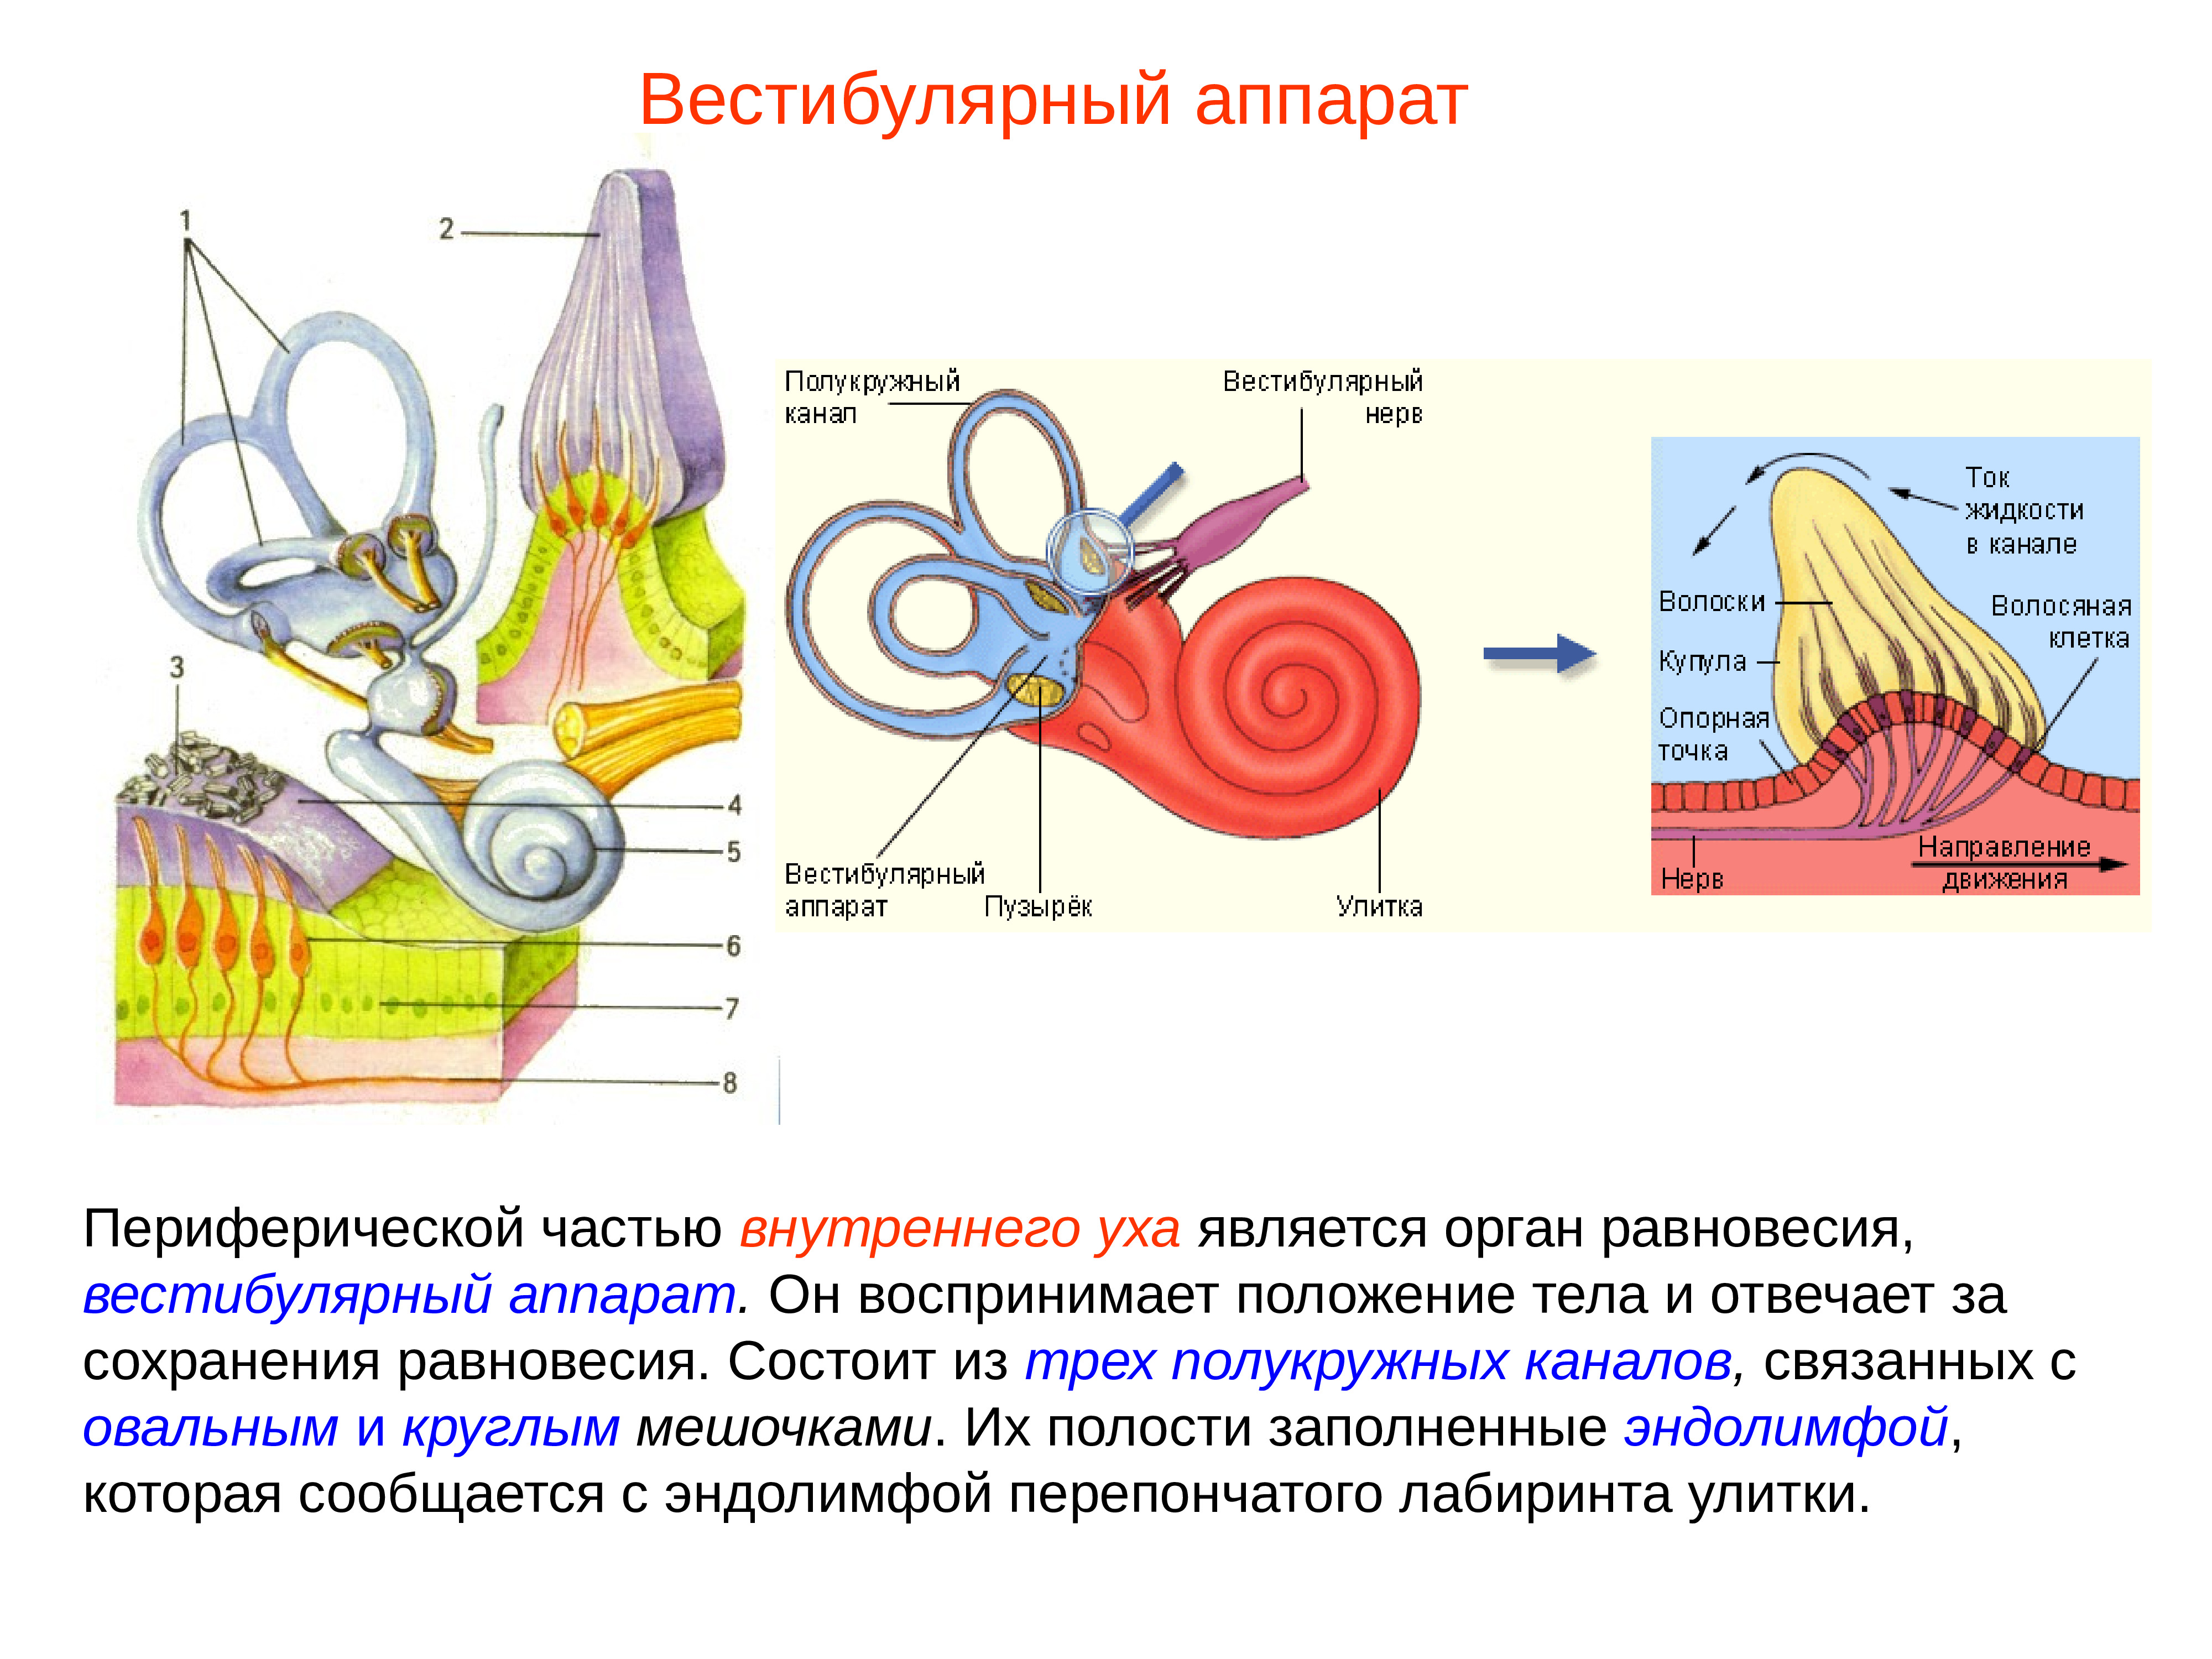 Равновесия аппарат орган равновесия. Внутреннее ухо вестибулярный анализатор анатомия. Строение строение вестибулярного аппарата. Полукружные каналы внутреннего уха анатомия. Схема периферического отдела вестибулярного анализатора.